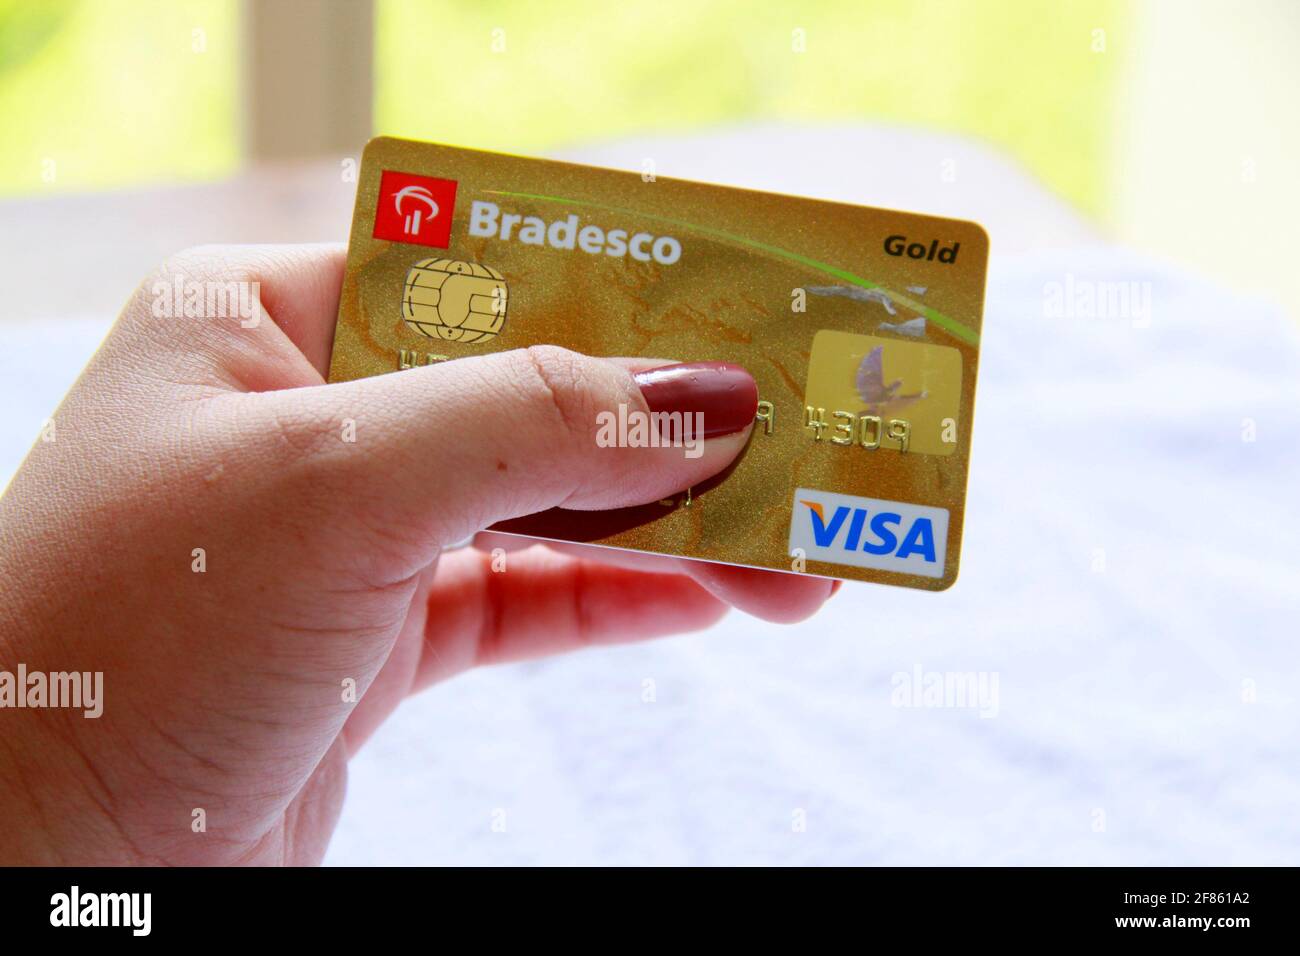 salvador, bahia / brasilien - 10. november 2013: Frau Hand hält Bradesco Visa Kreditkarte. *** Ortsüberschrift *** Stockfoto